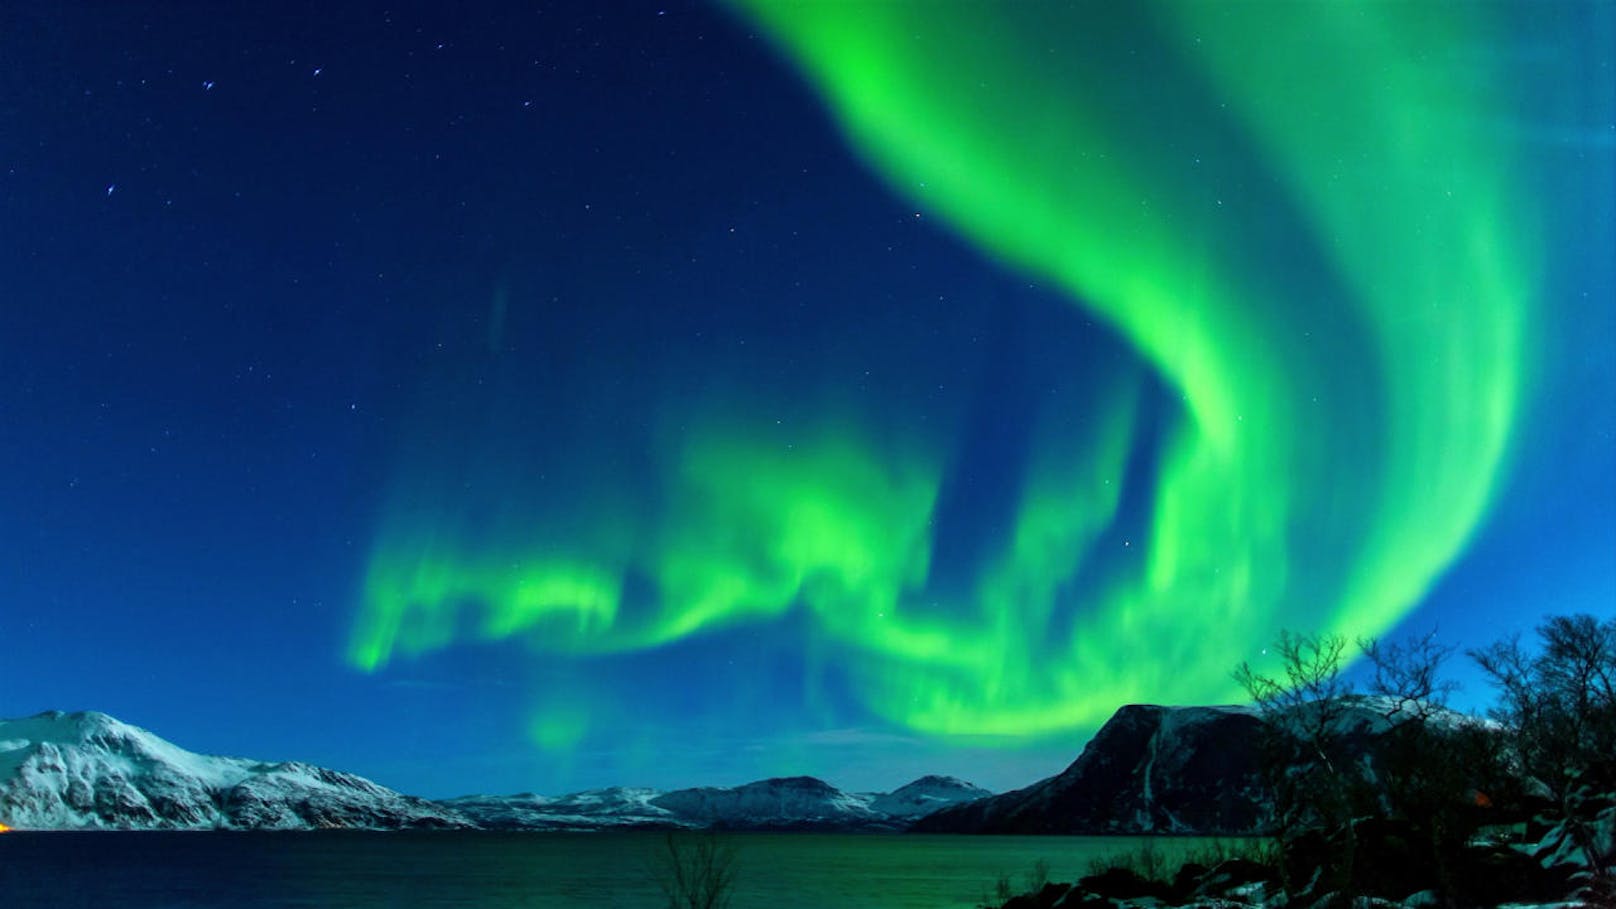 Auf offenem Feld unter freiem Sternenhimmel filmte der Aurora-Experte Kjetil Skogli im norwegischen Tromsø die beeindruckenden Nordlichter.